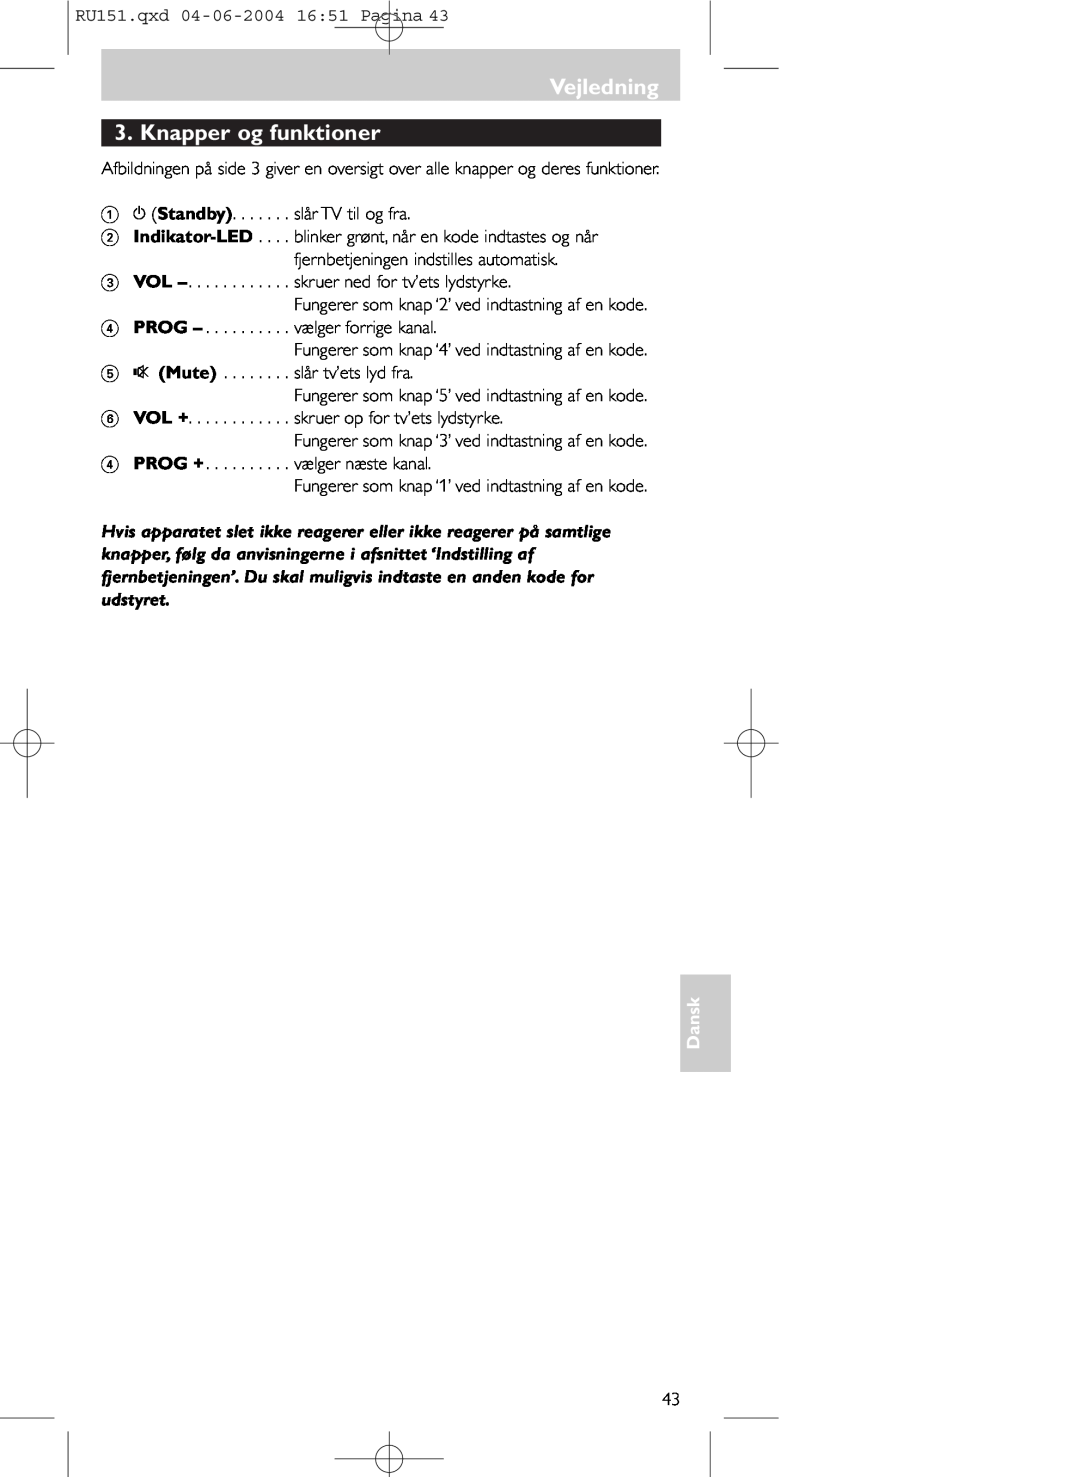 Philips SBC RU 151 manual Vejledning 3. Knapper og funktioner, Dansk 